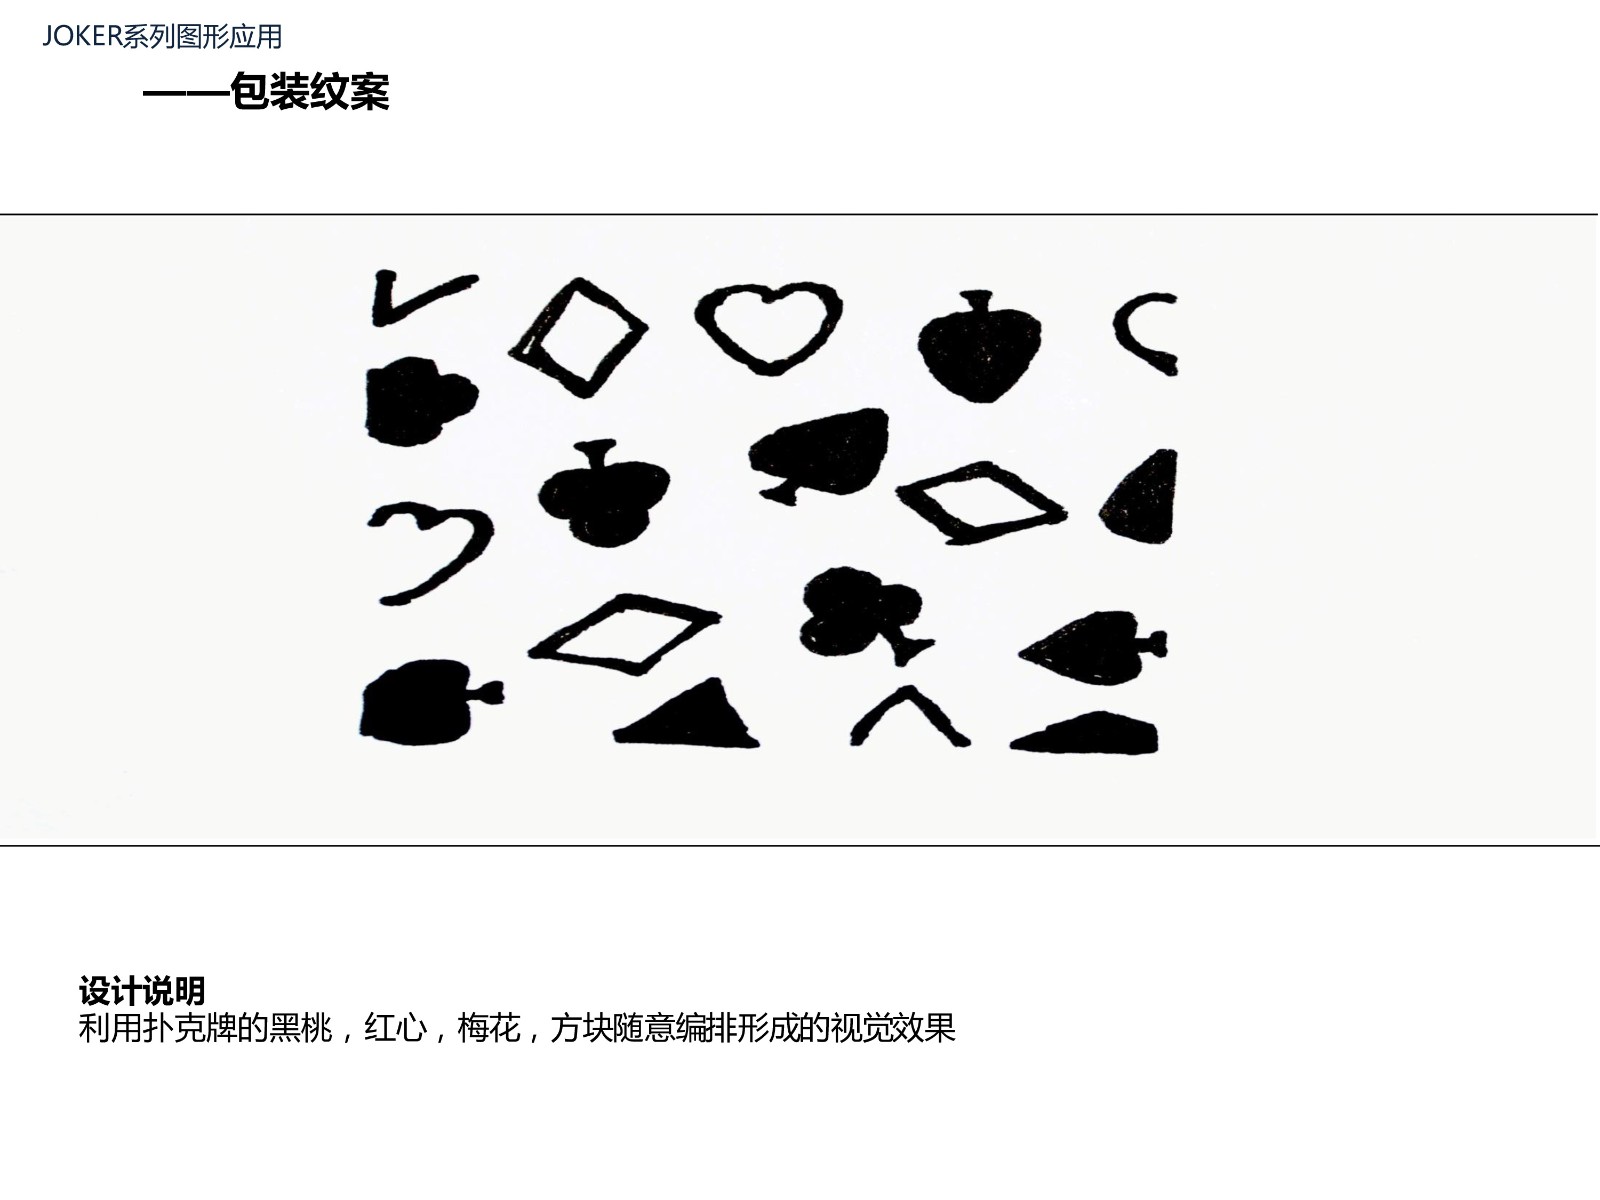 第六章单元训练作业范例 传统文化符号的设计拓展  2011产品设计 谢安西 JOKER 系列...-8.jpg